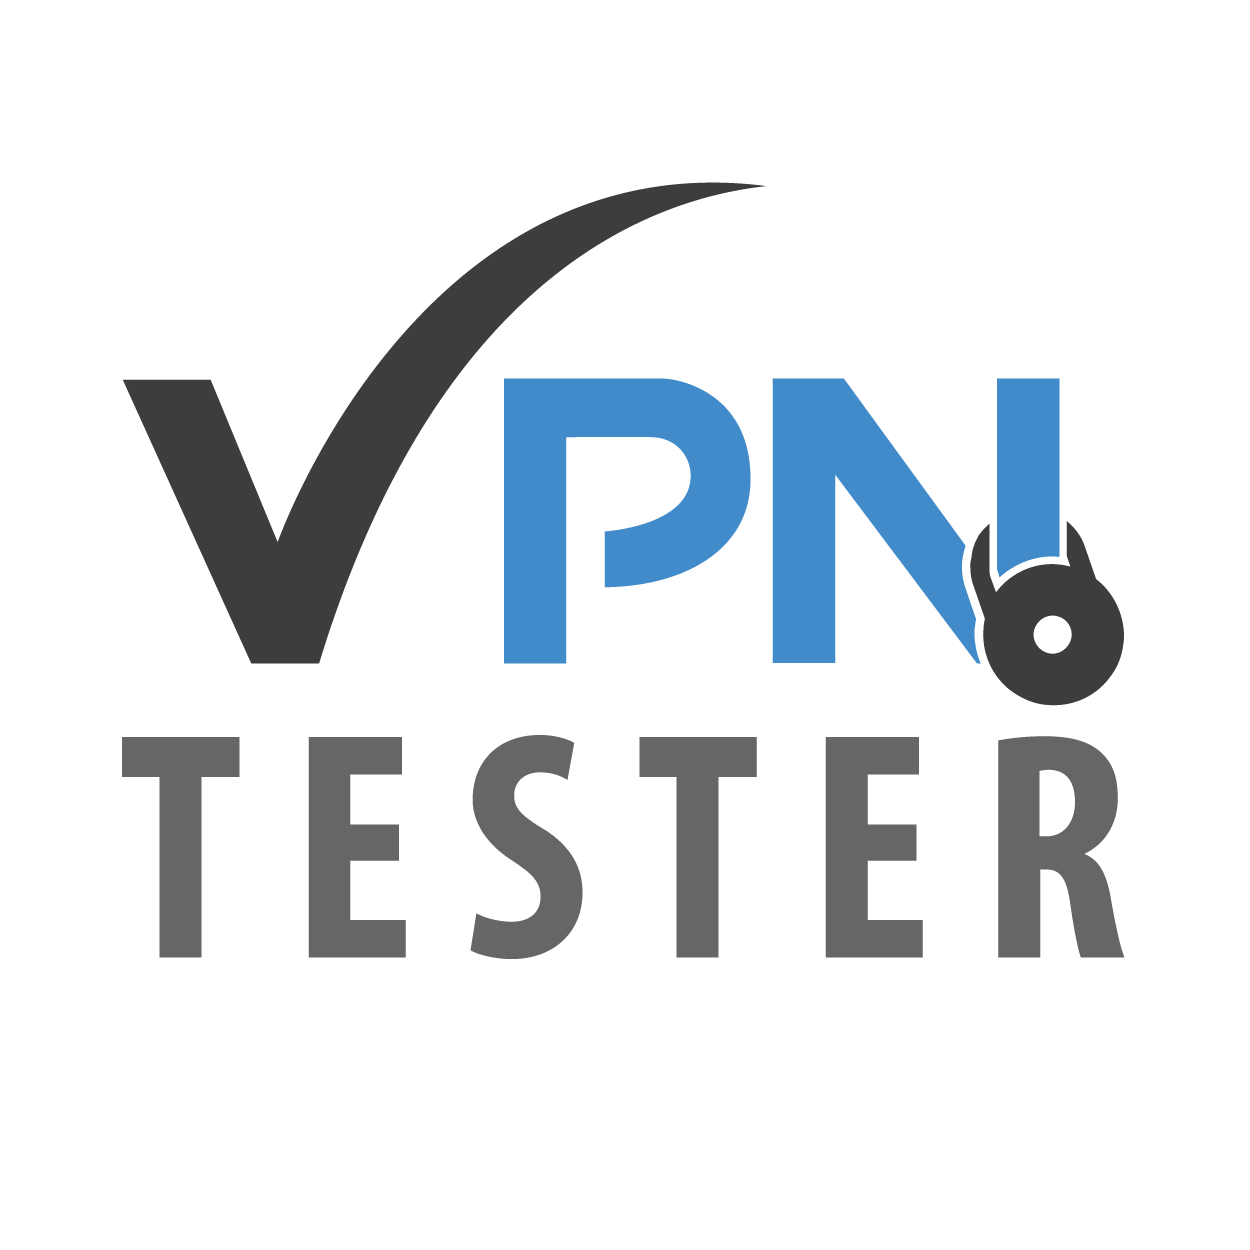 NEU: Perfect-Privacy mit Obfsproxy & OpenVPN über Stunnel, SSH (Ports 443,53) 1